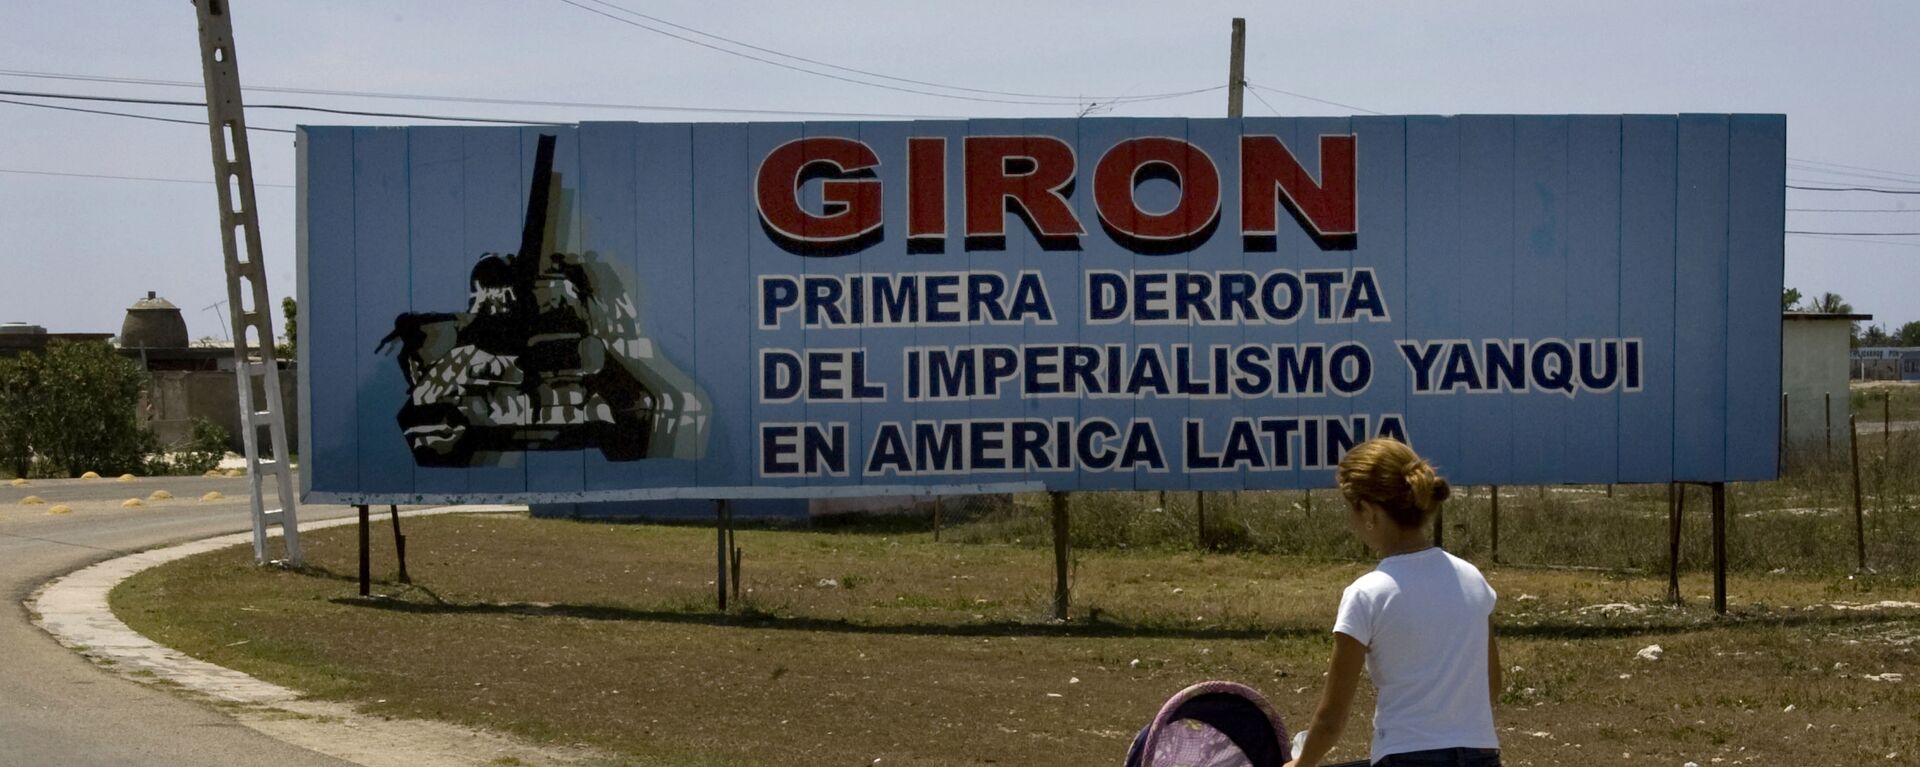 Cartel ubicado a la entrada del municipio Girón, en Matanzas, Cuba - Sputnik Mundo, 1920, 15.04.2021